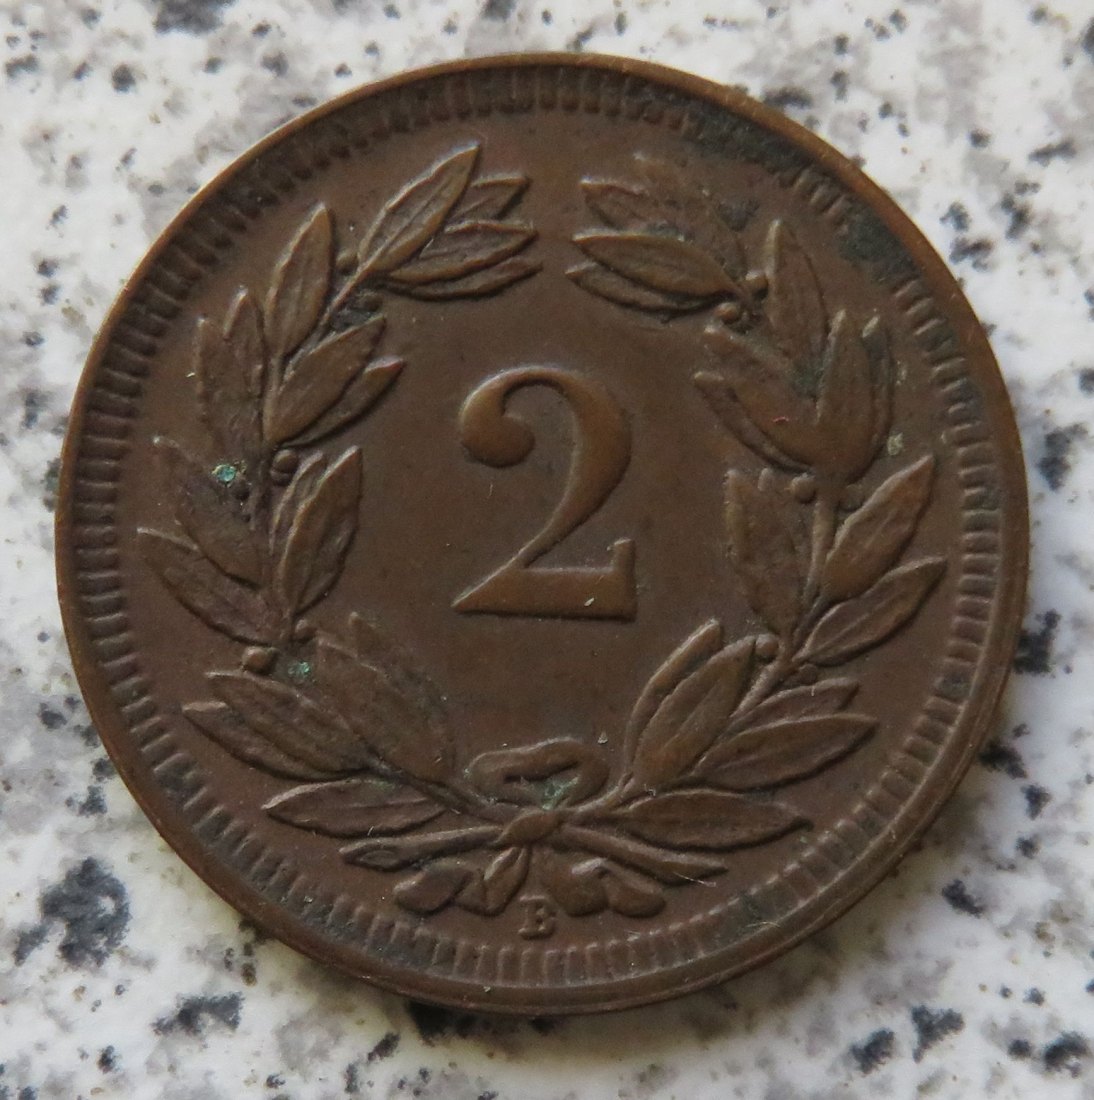  Schweiz 2 Rappen 1900   